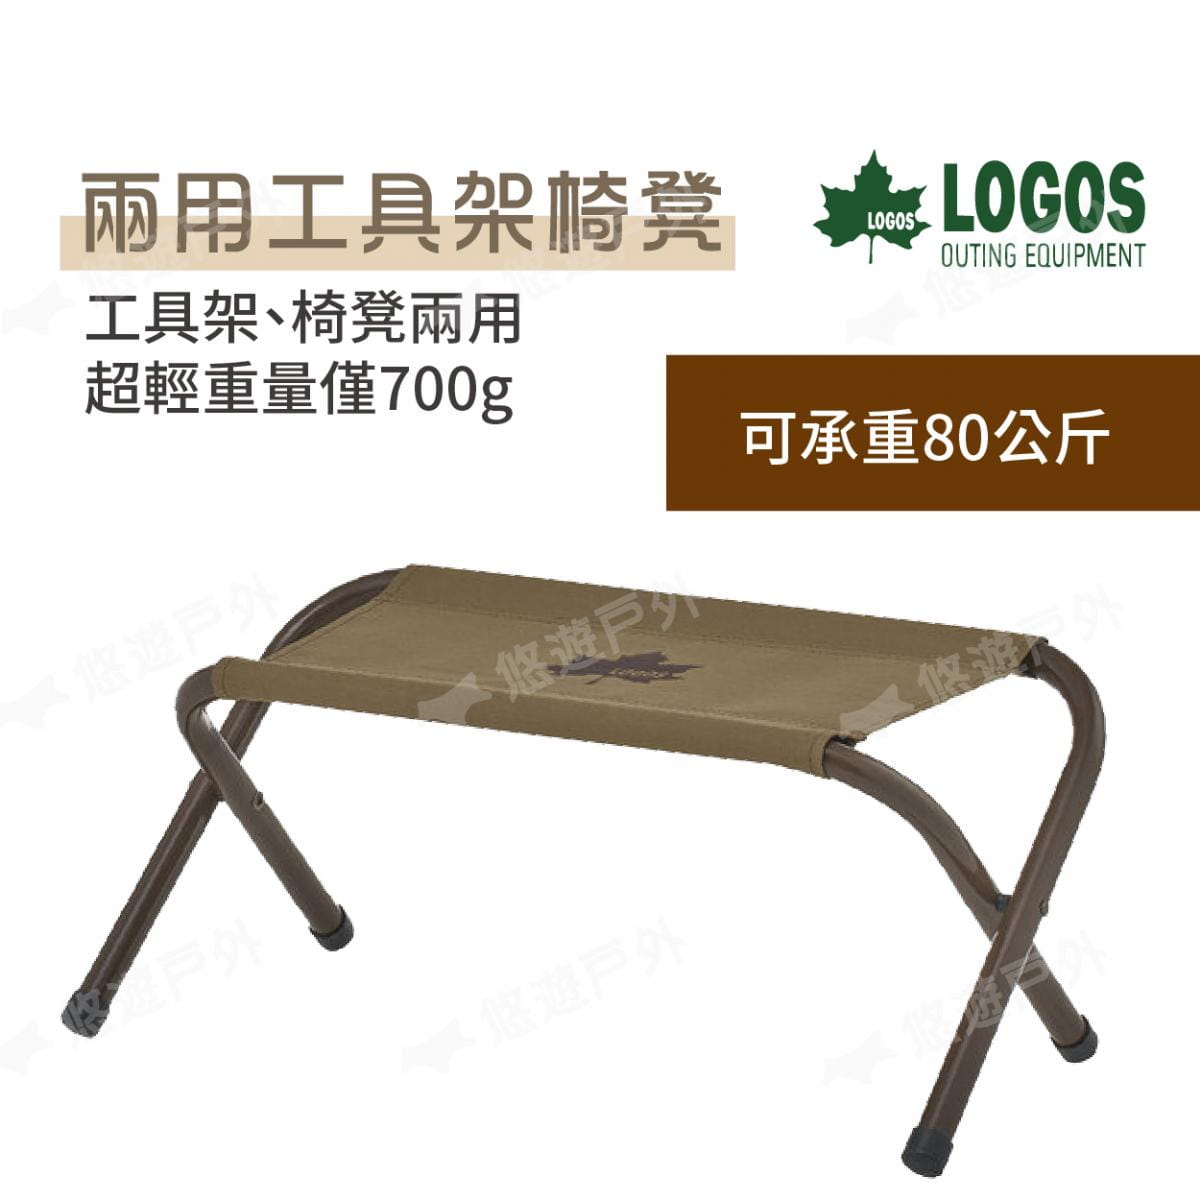 【LOGOS】兩用工具架椅凳 LG73188032 (悠遊戶外) 2